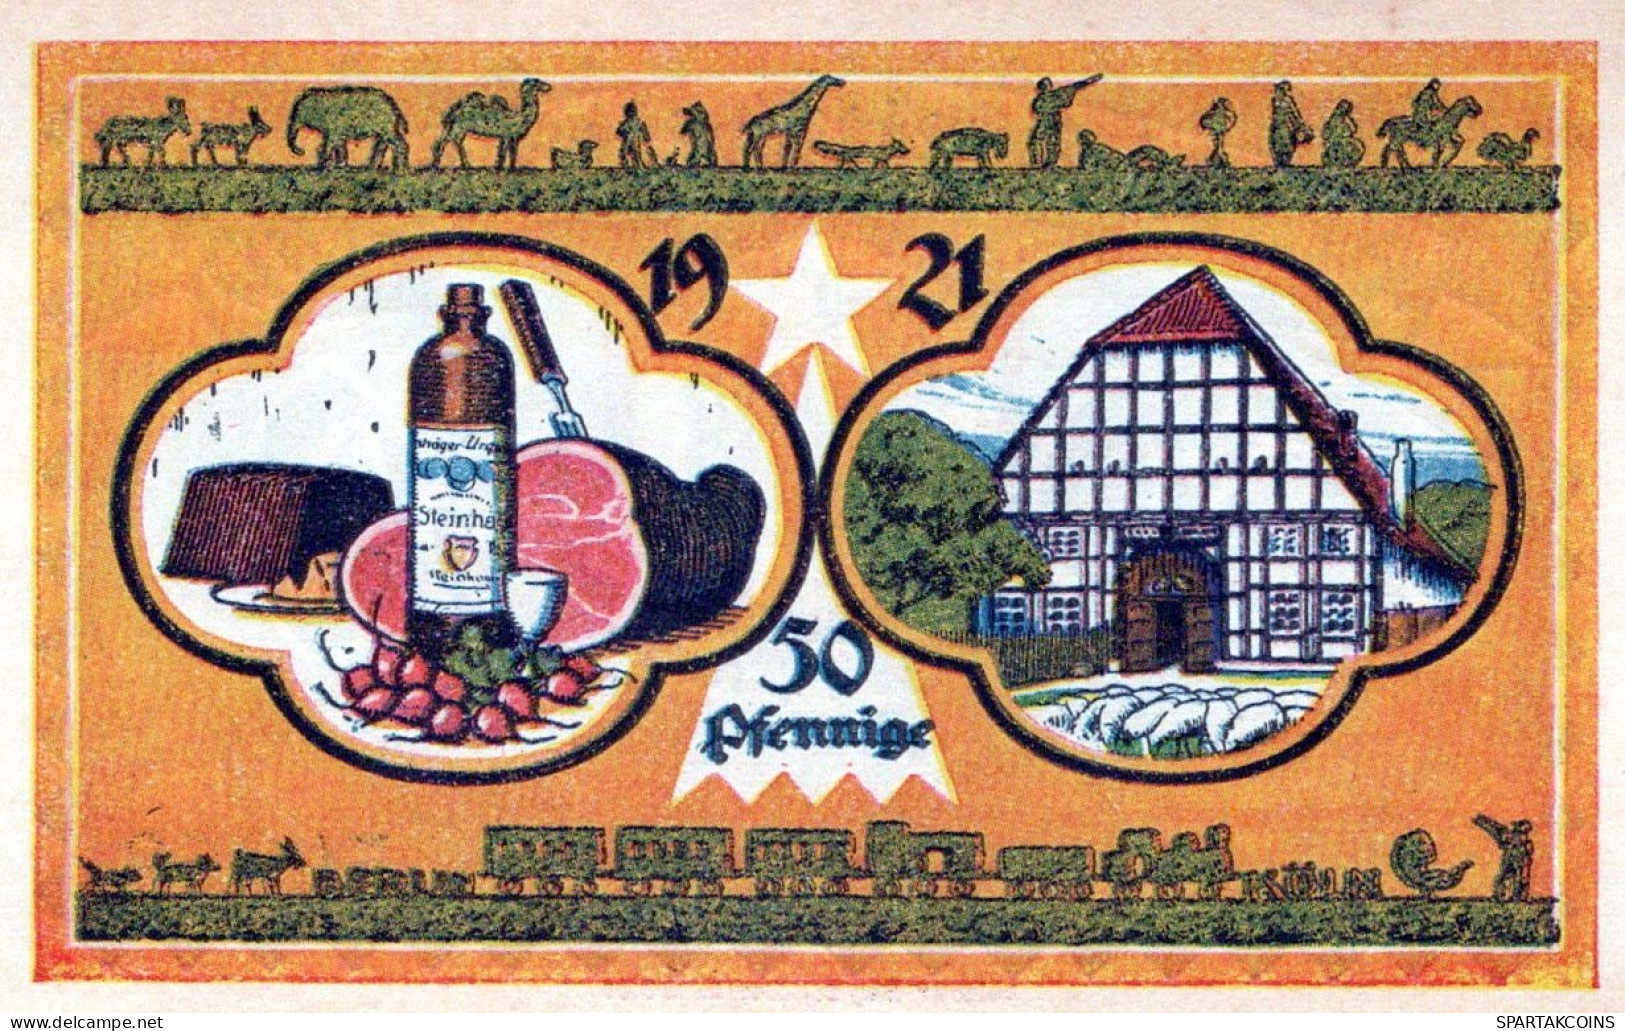 50 PFENNIG 1921 Stadt STEINHEIM IN WESTFALEN Westphalia UNC DEUTSCHLAND #PI979 - [11] Local Banknote Issues